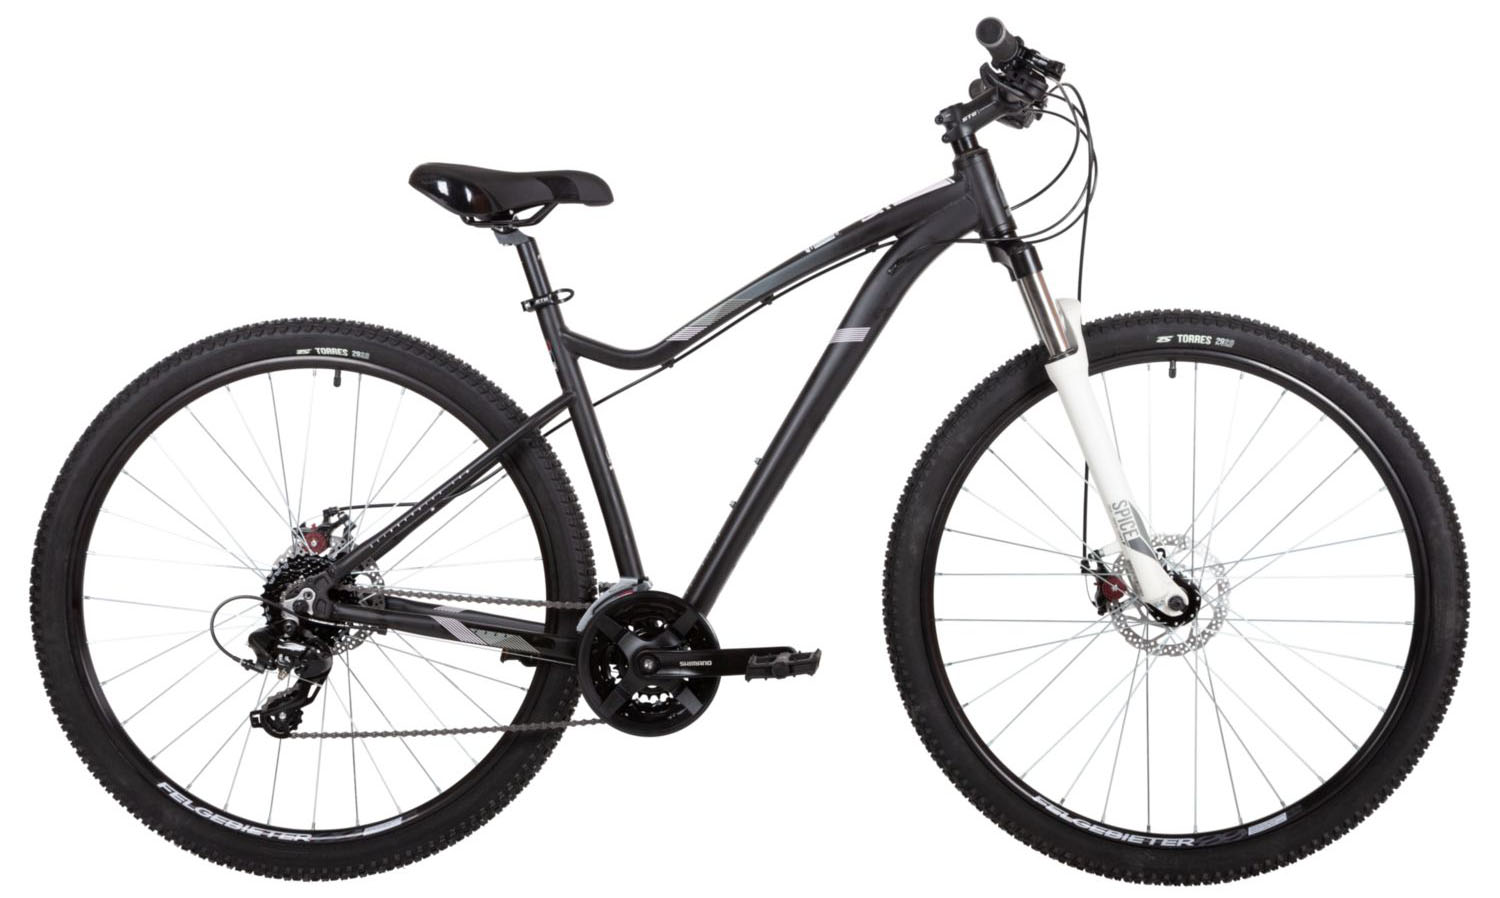  Отзывы о Горном велосипеде Stinger Vega STD 29 2021